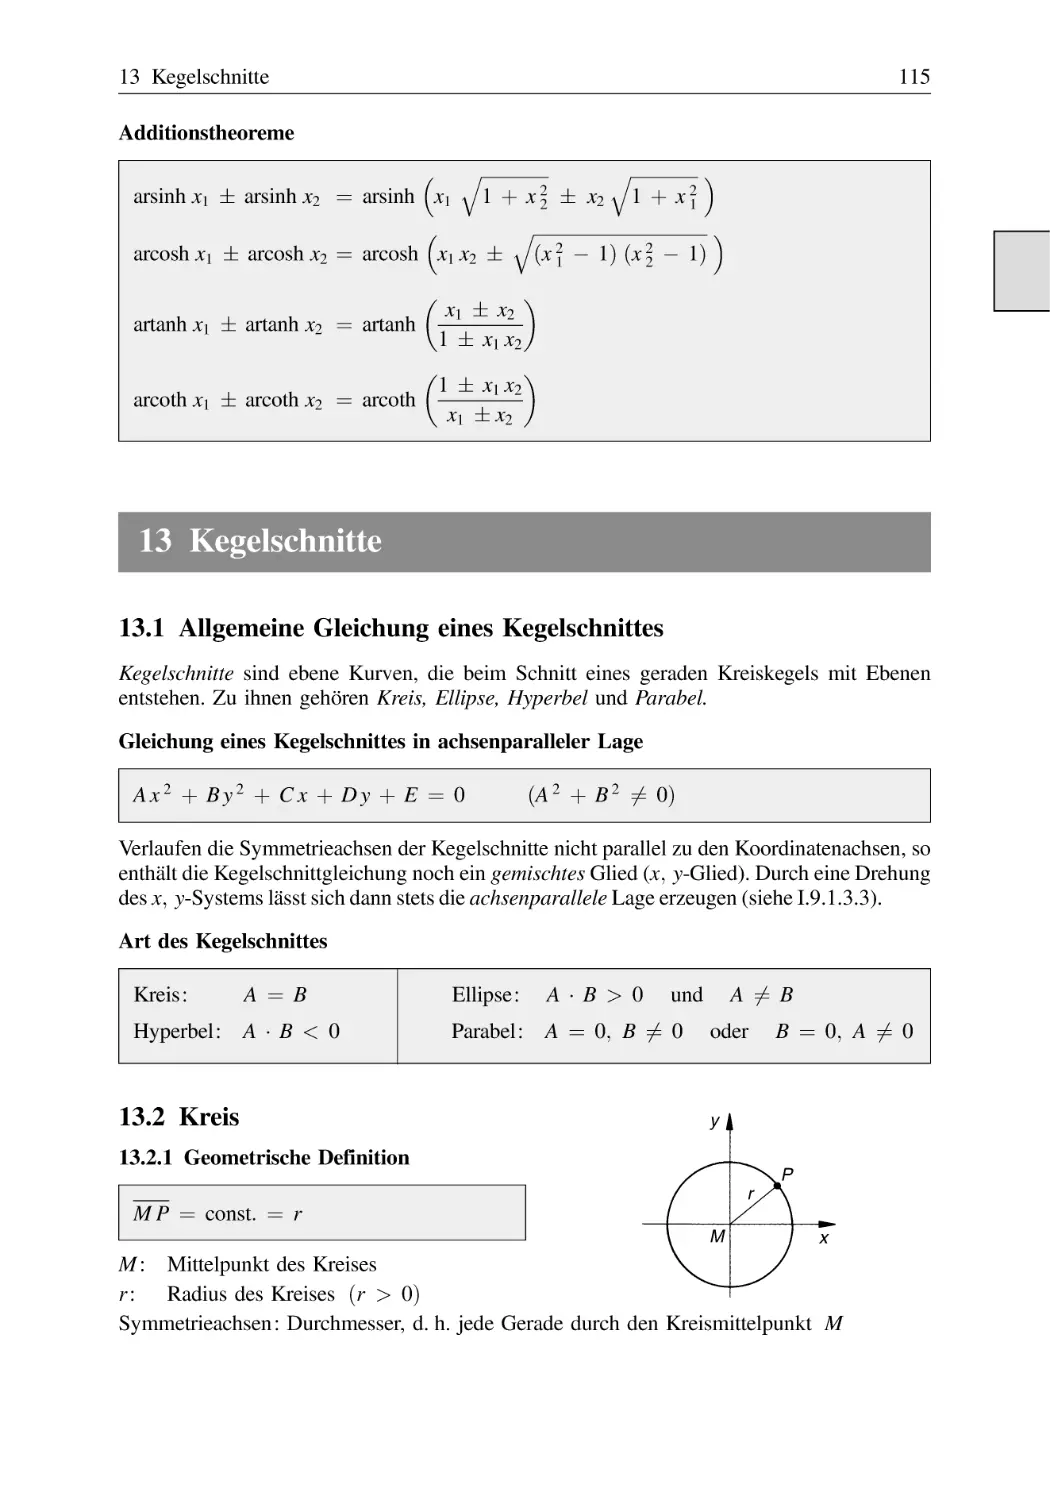 13 Kegelschnitte
13.1 Allgemeine Gleichung eines Kegelschnittes
13.2 Kreis
13.2.1 Geometrische Definition